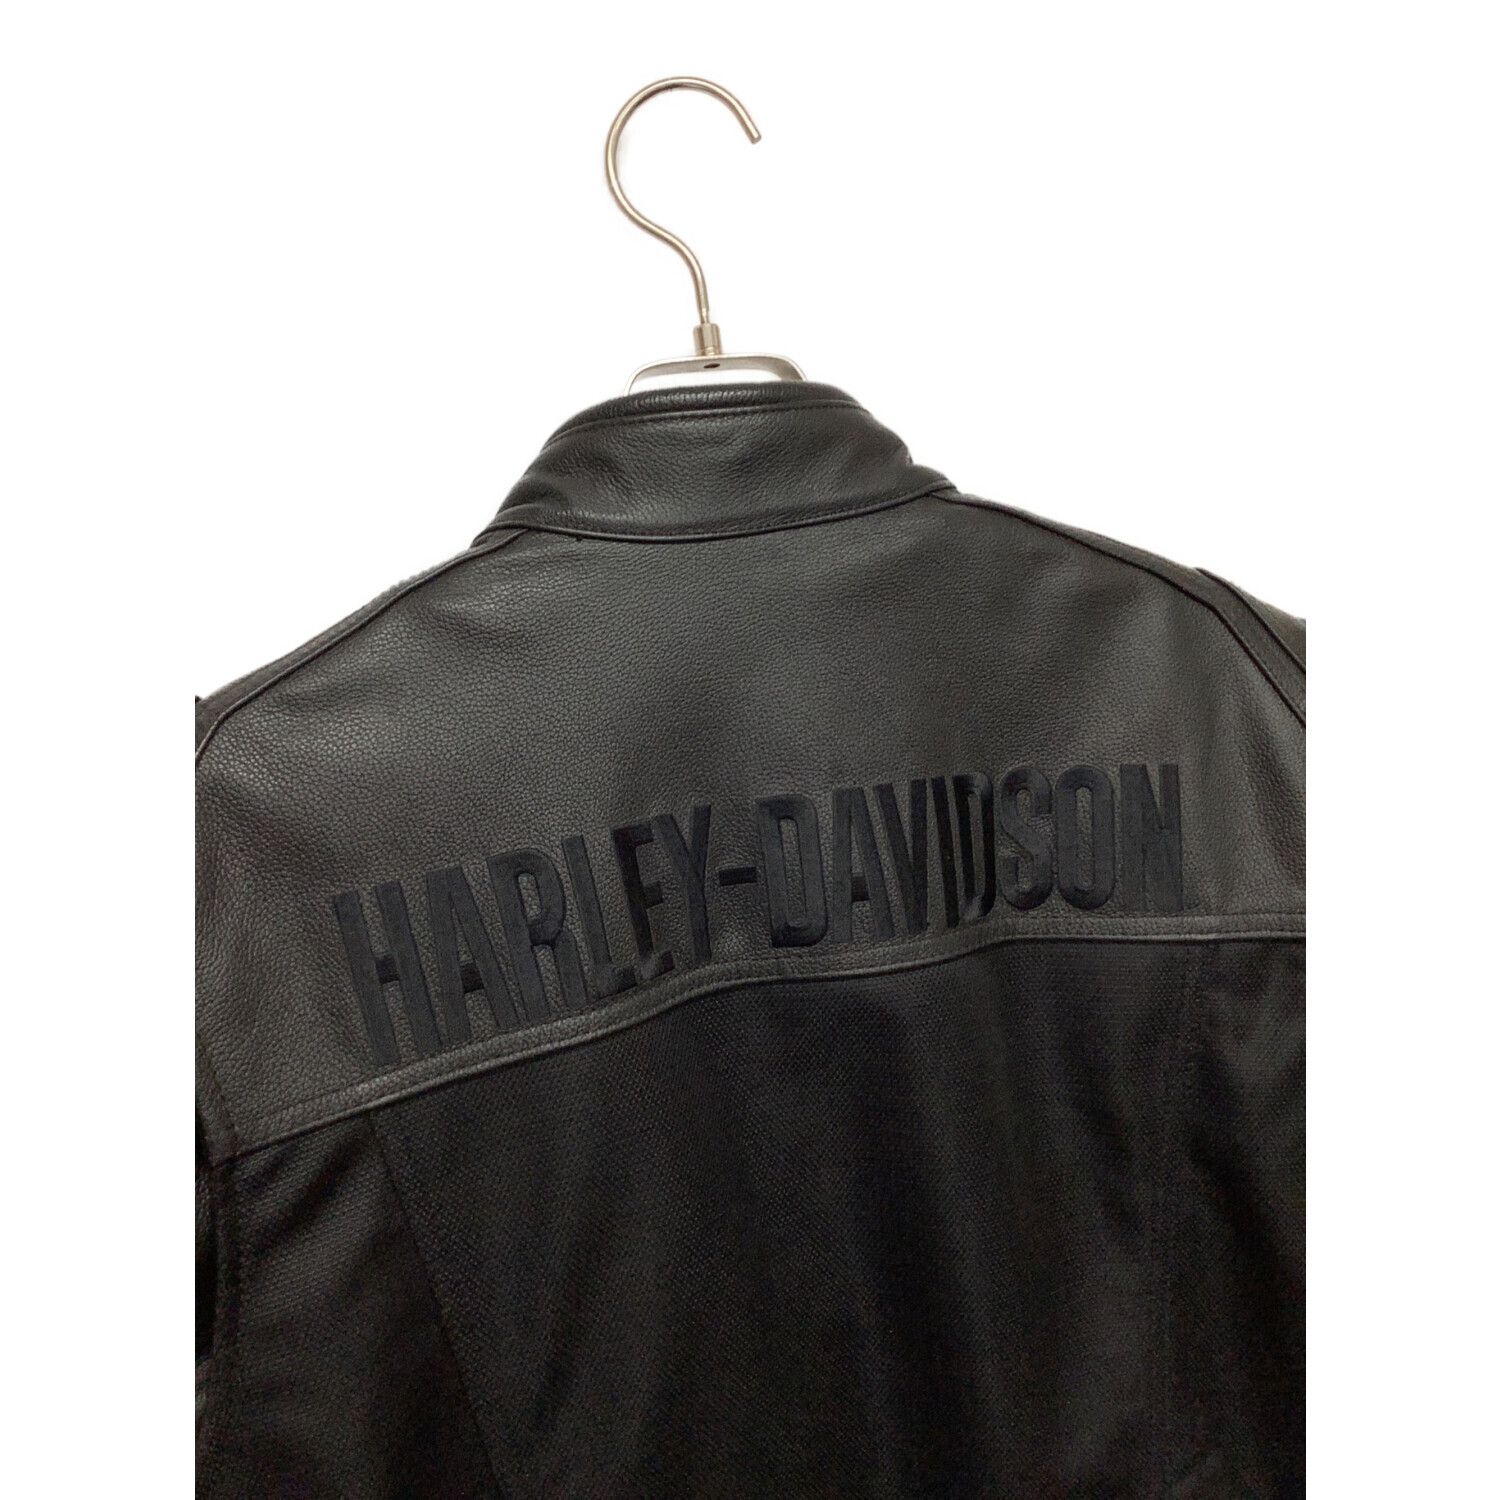 HARLEY-DAVIDSON (ハーレーダビッドソン) ライダースジャケット メンズ 